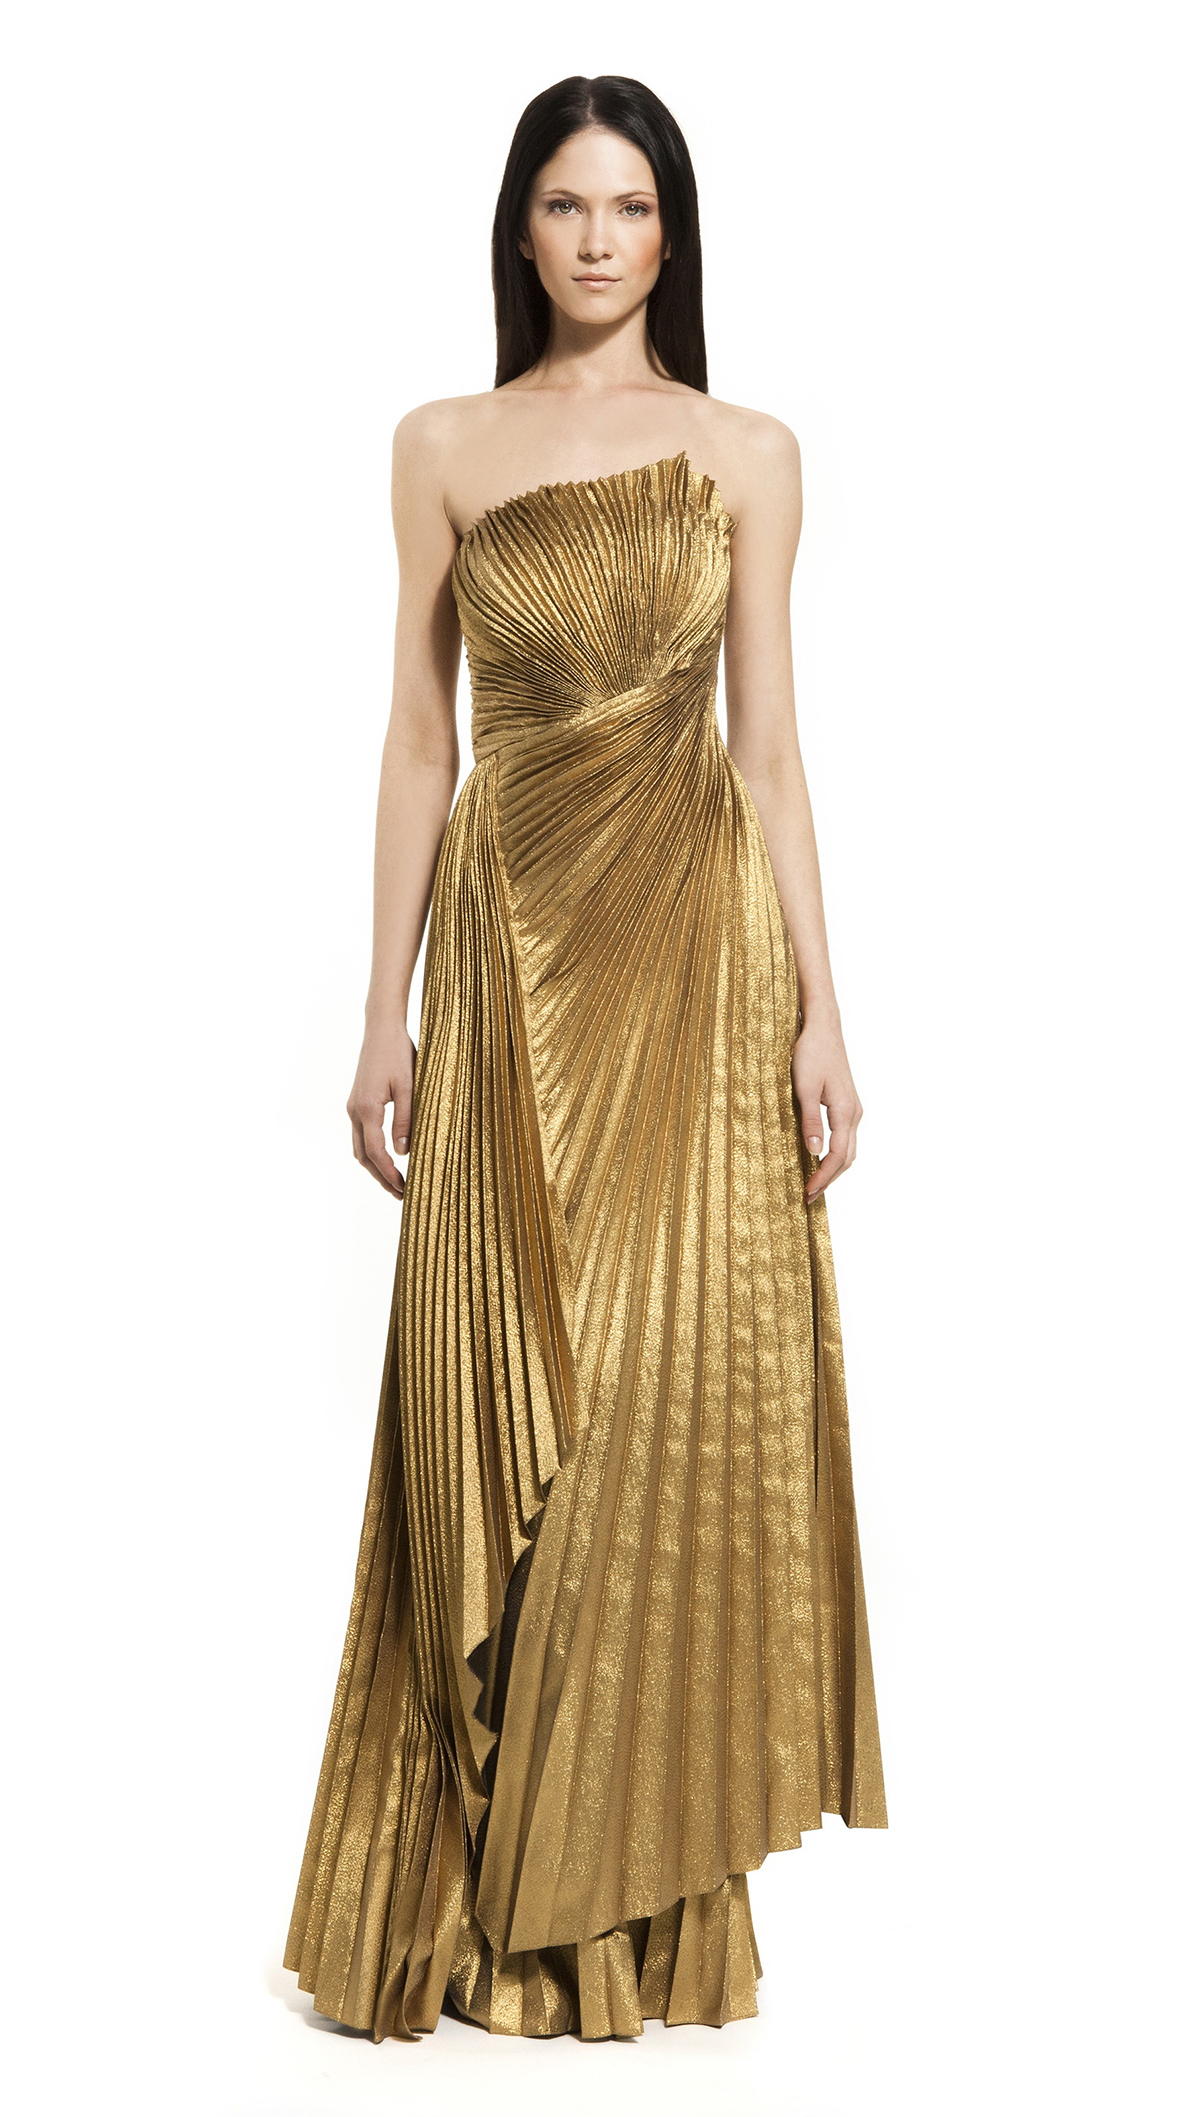 золотое платье сингл-спанз.jpg